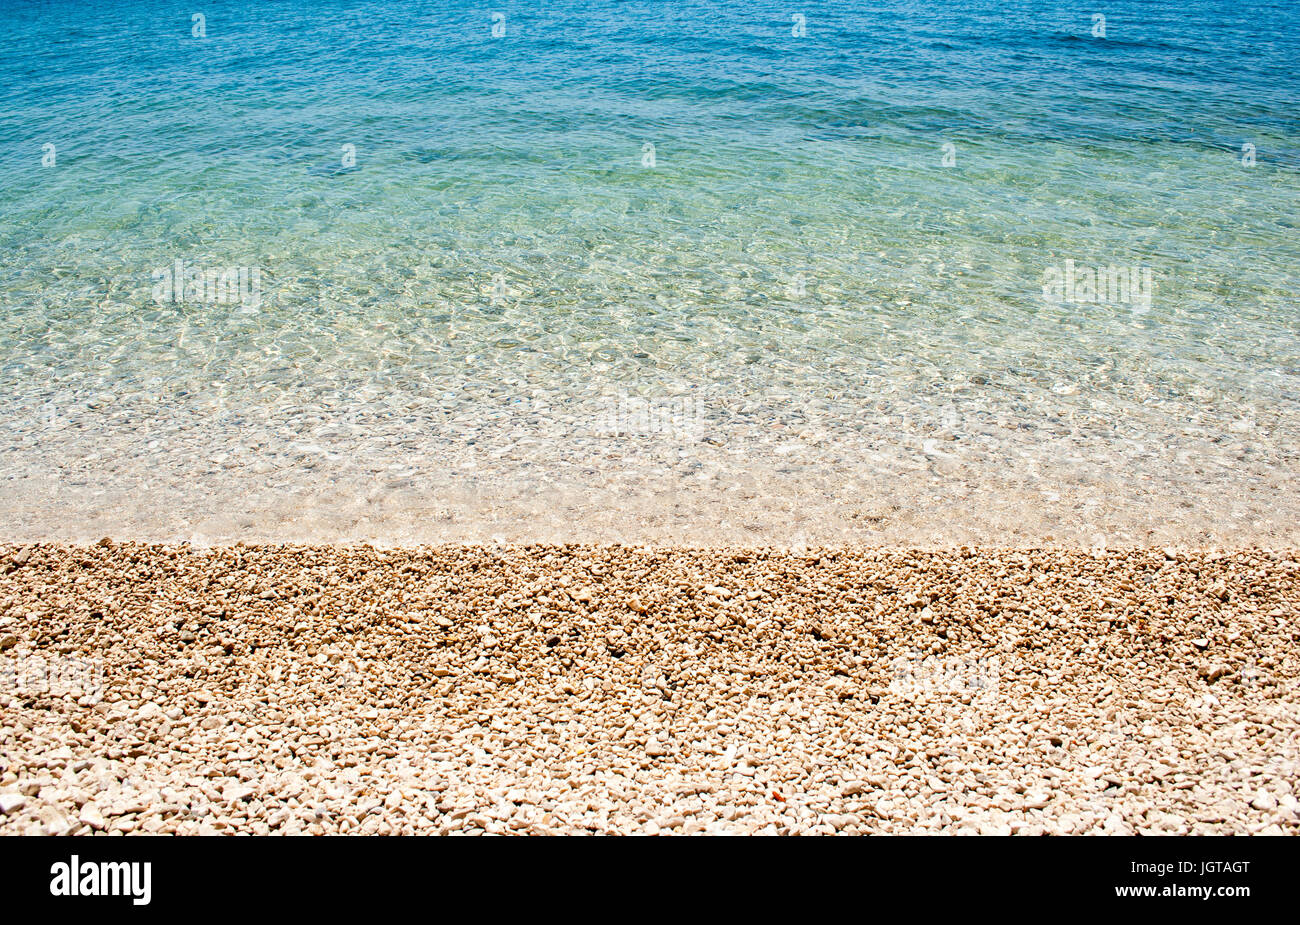 Horizontale Hintergrund Bild der ruhigen türkisfarbenen Meer mit Kieselstrand Stockfoto